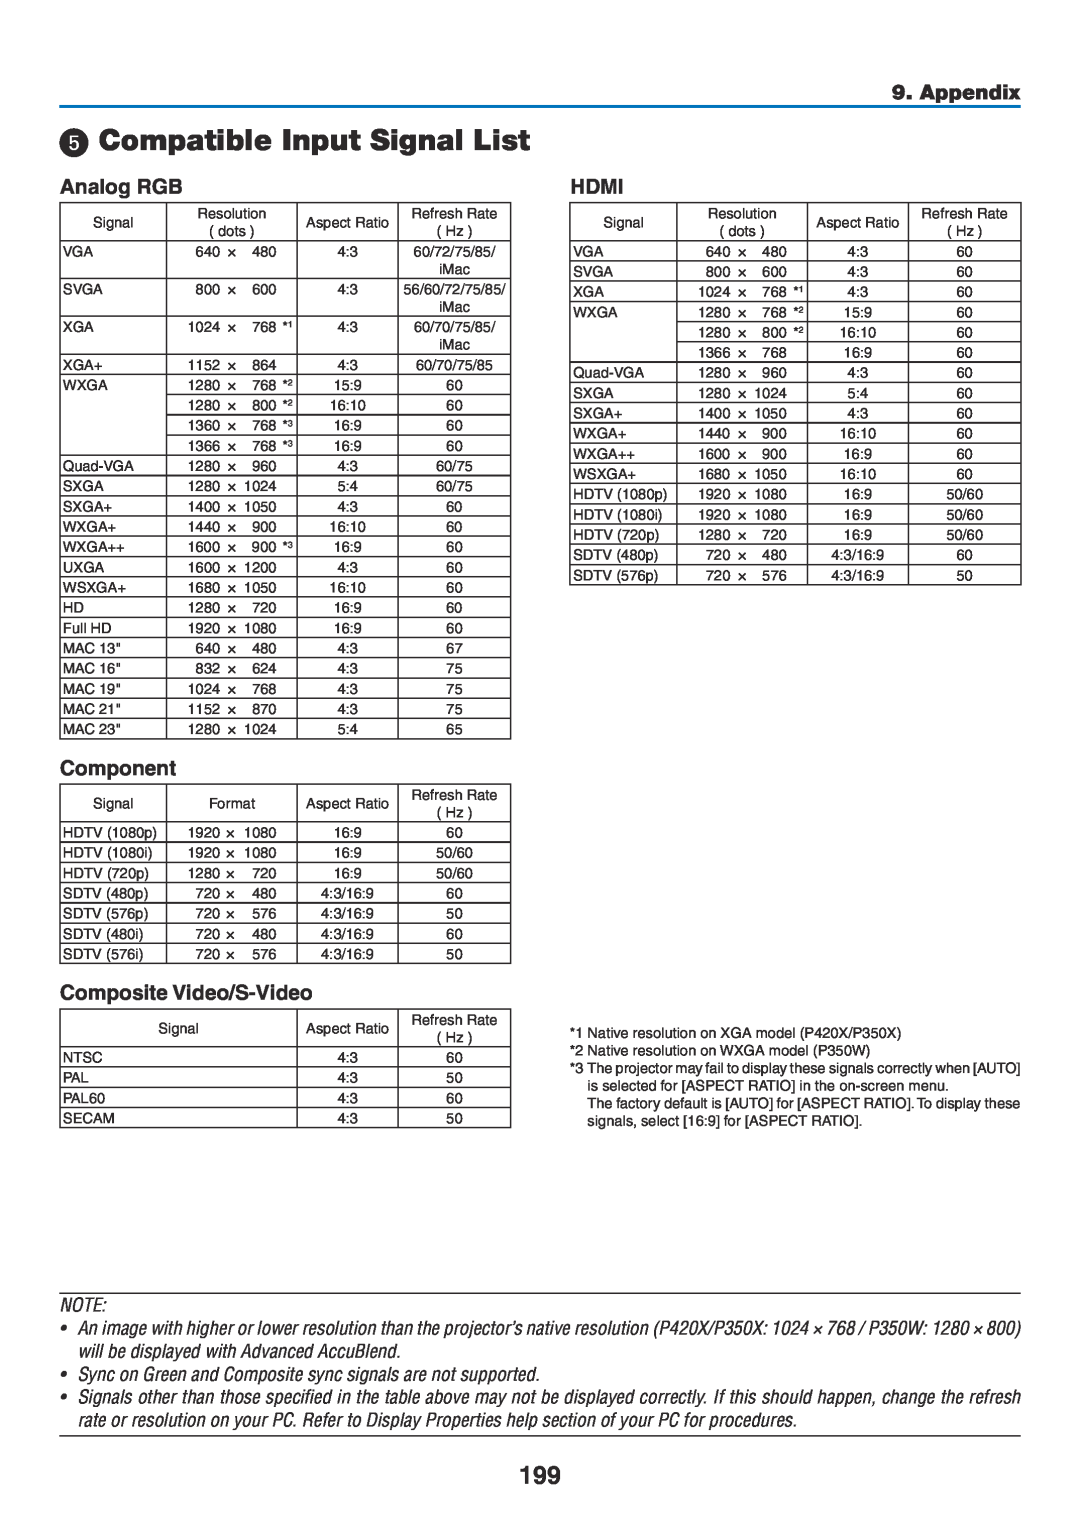 NEC NP-P350X, NP-P420X Compatible Input Signal List, Analog RGB, Component, Composite Video/S-Video, Hdmi, Appendix 